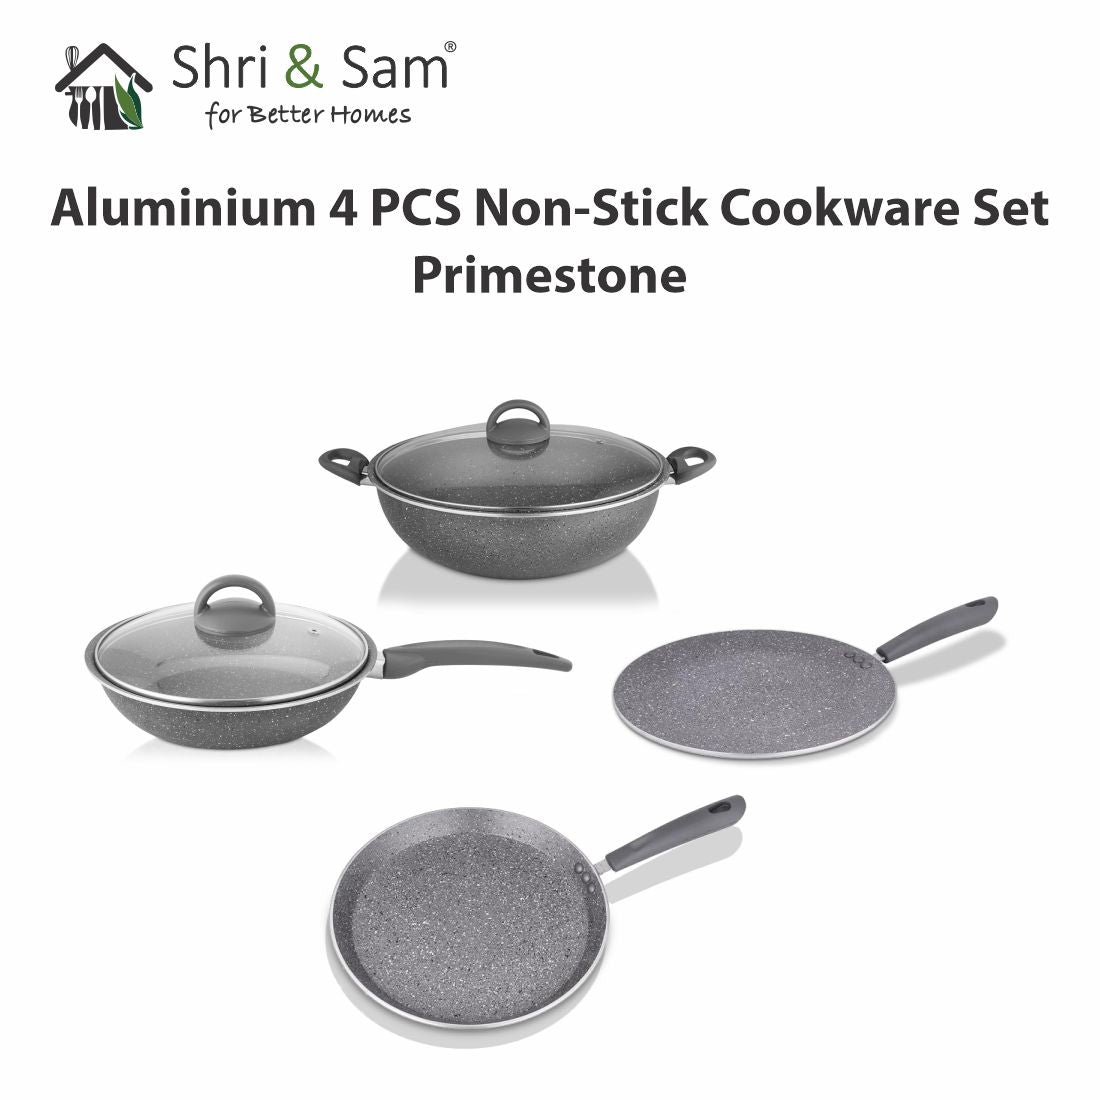 Aluminium 4 PCS Non-Stick Cookware Set Primestone